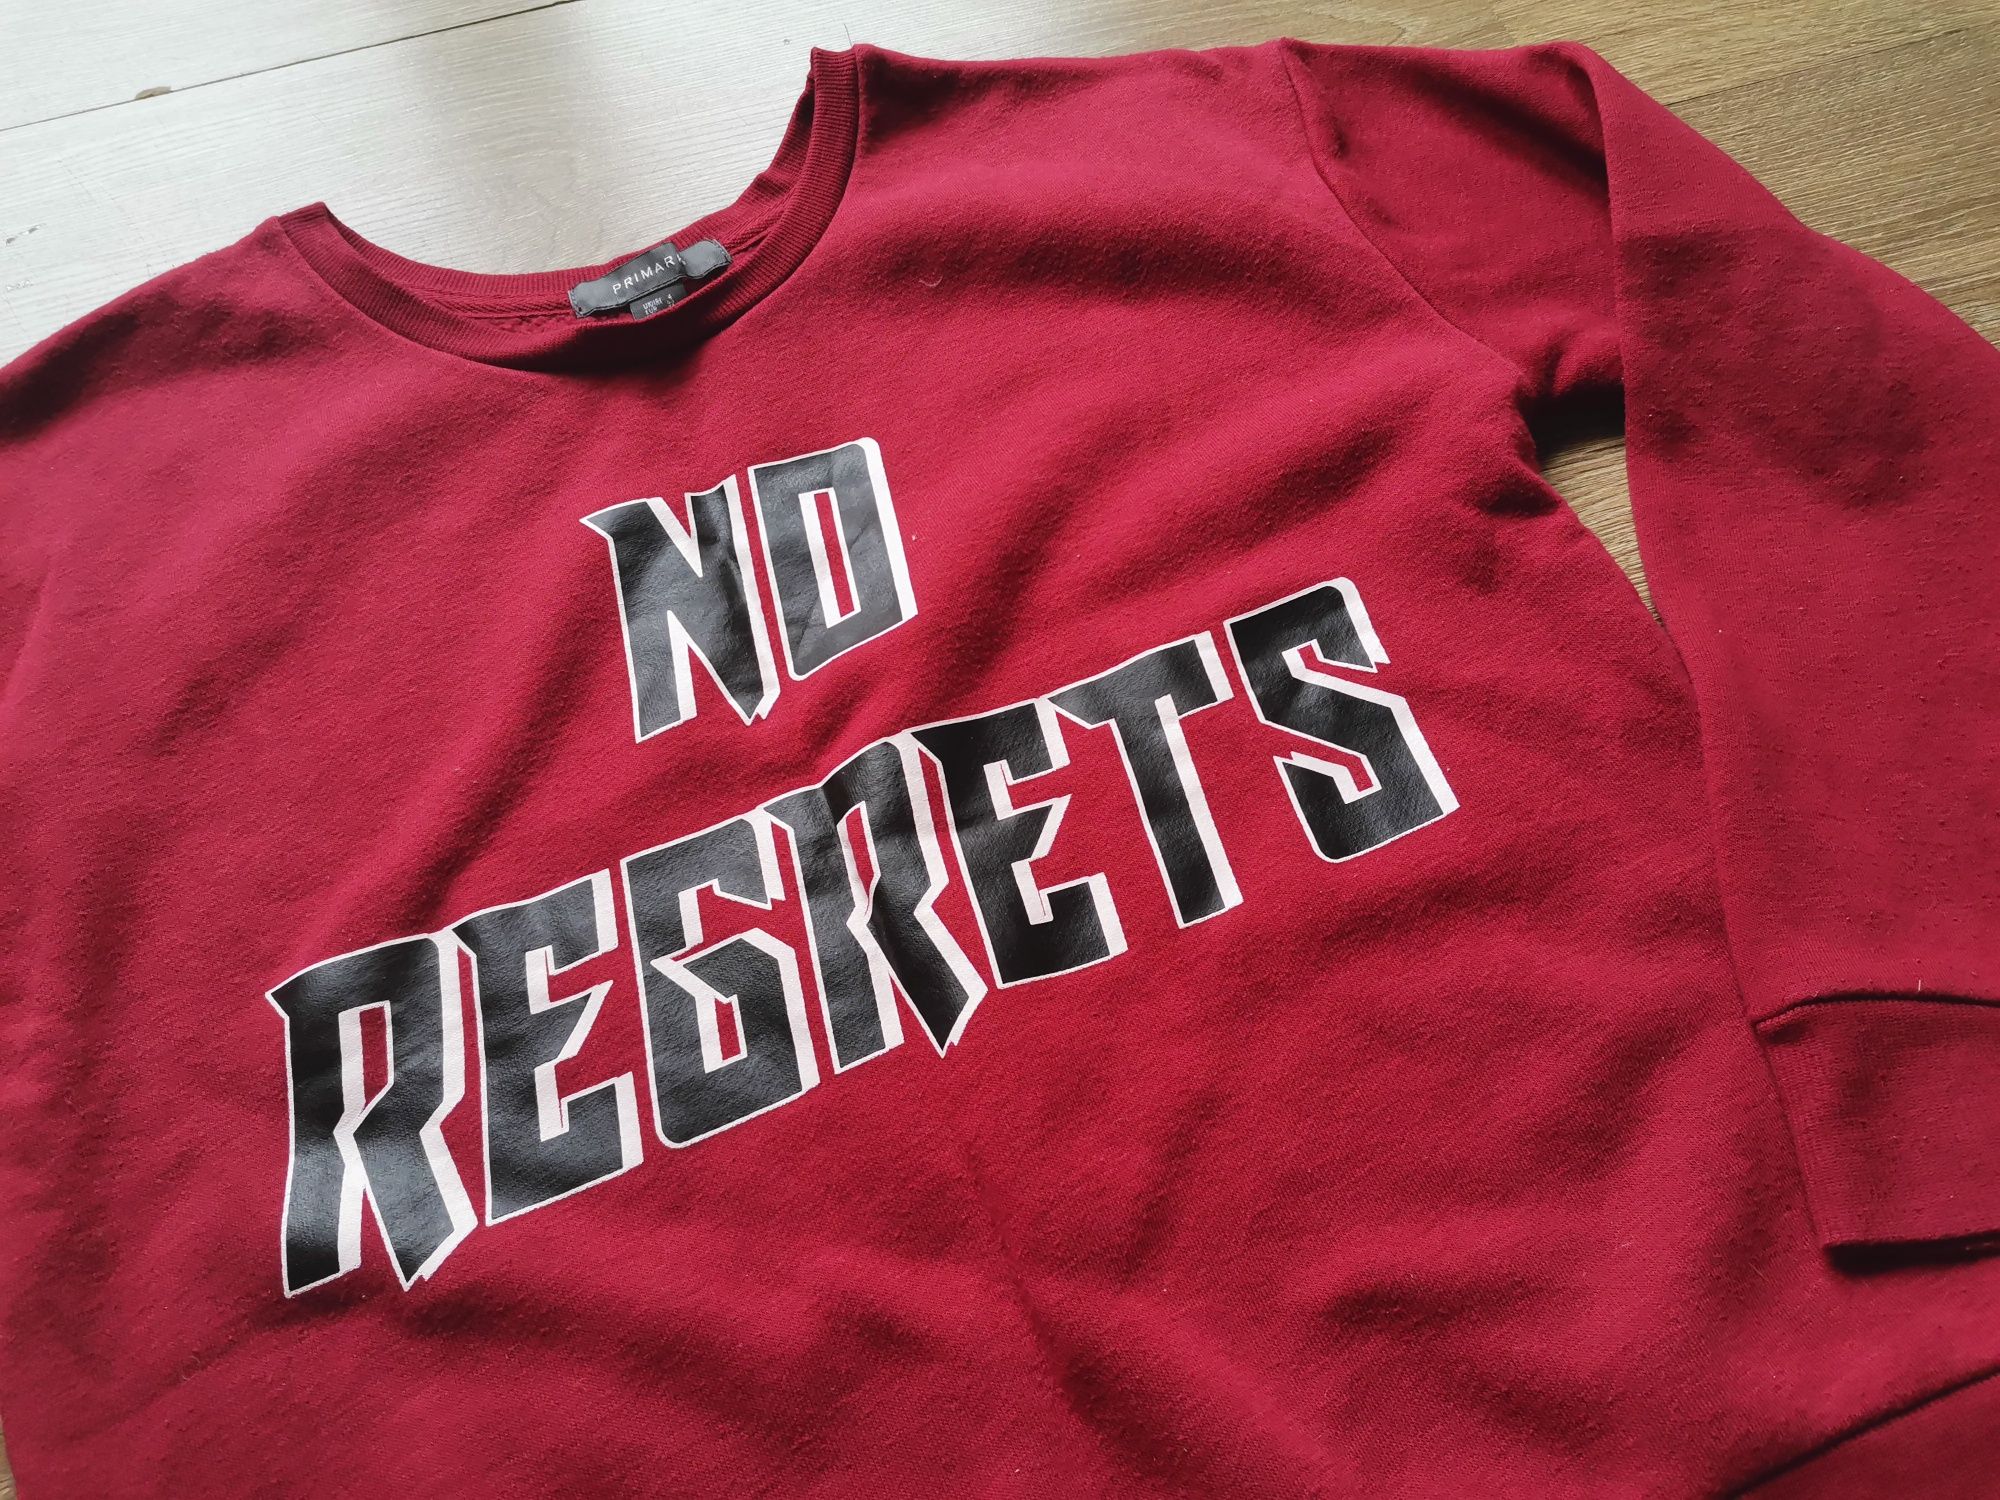 Czerwona bluza z napisem "no regrets"